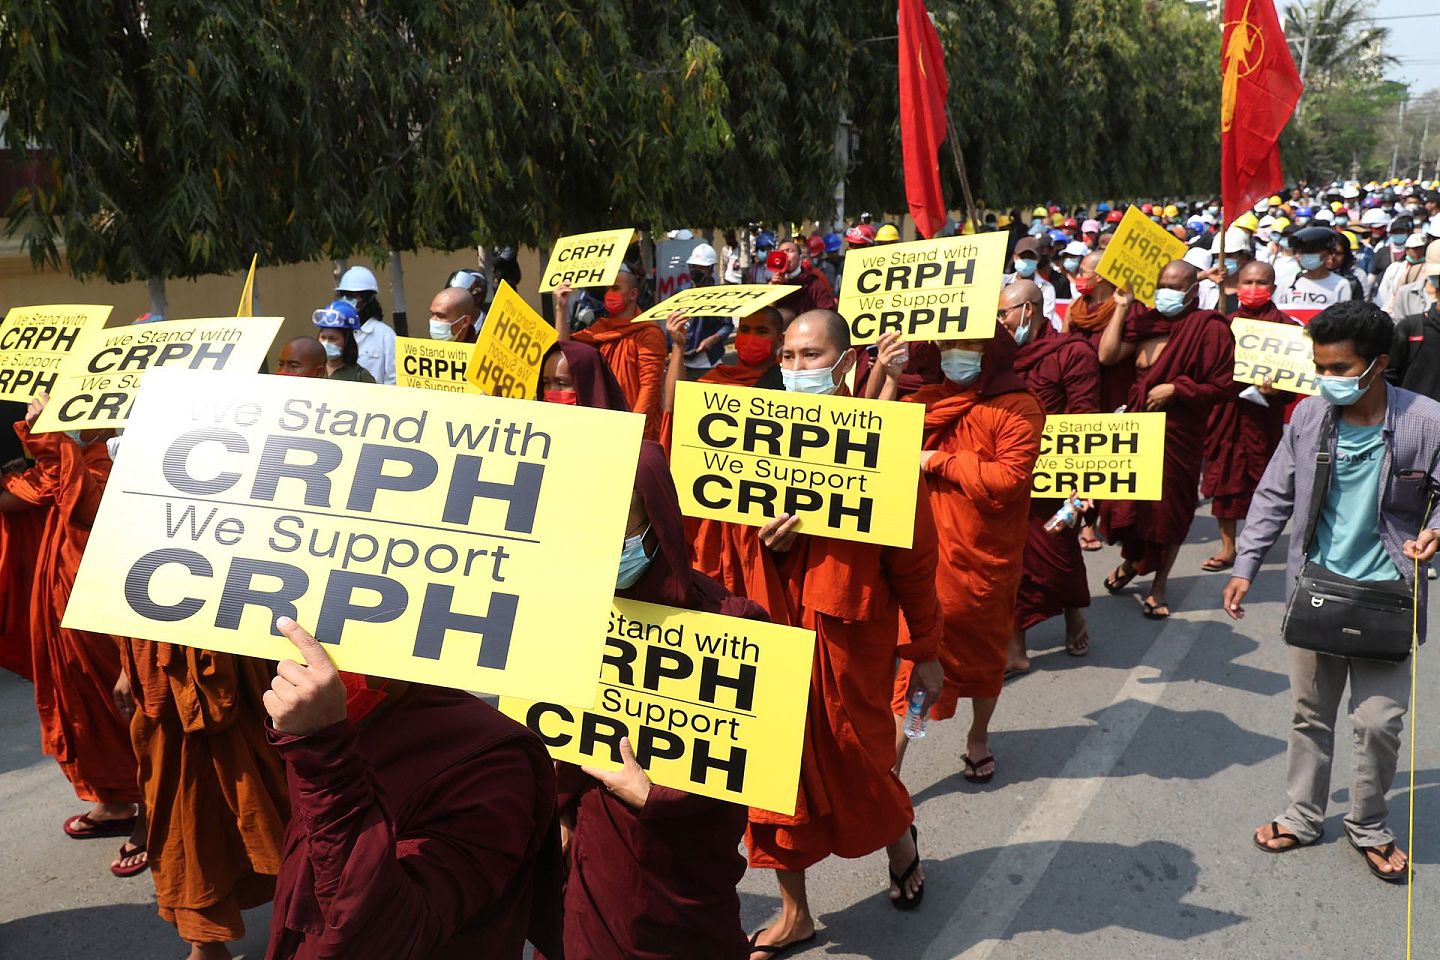 僧侣在缅甸曼德勒举行的反政变抗议活动中游行时高举流亡政府新组建的组织”CRPH“以示声援。(AP )